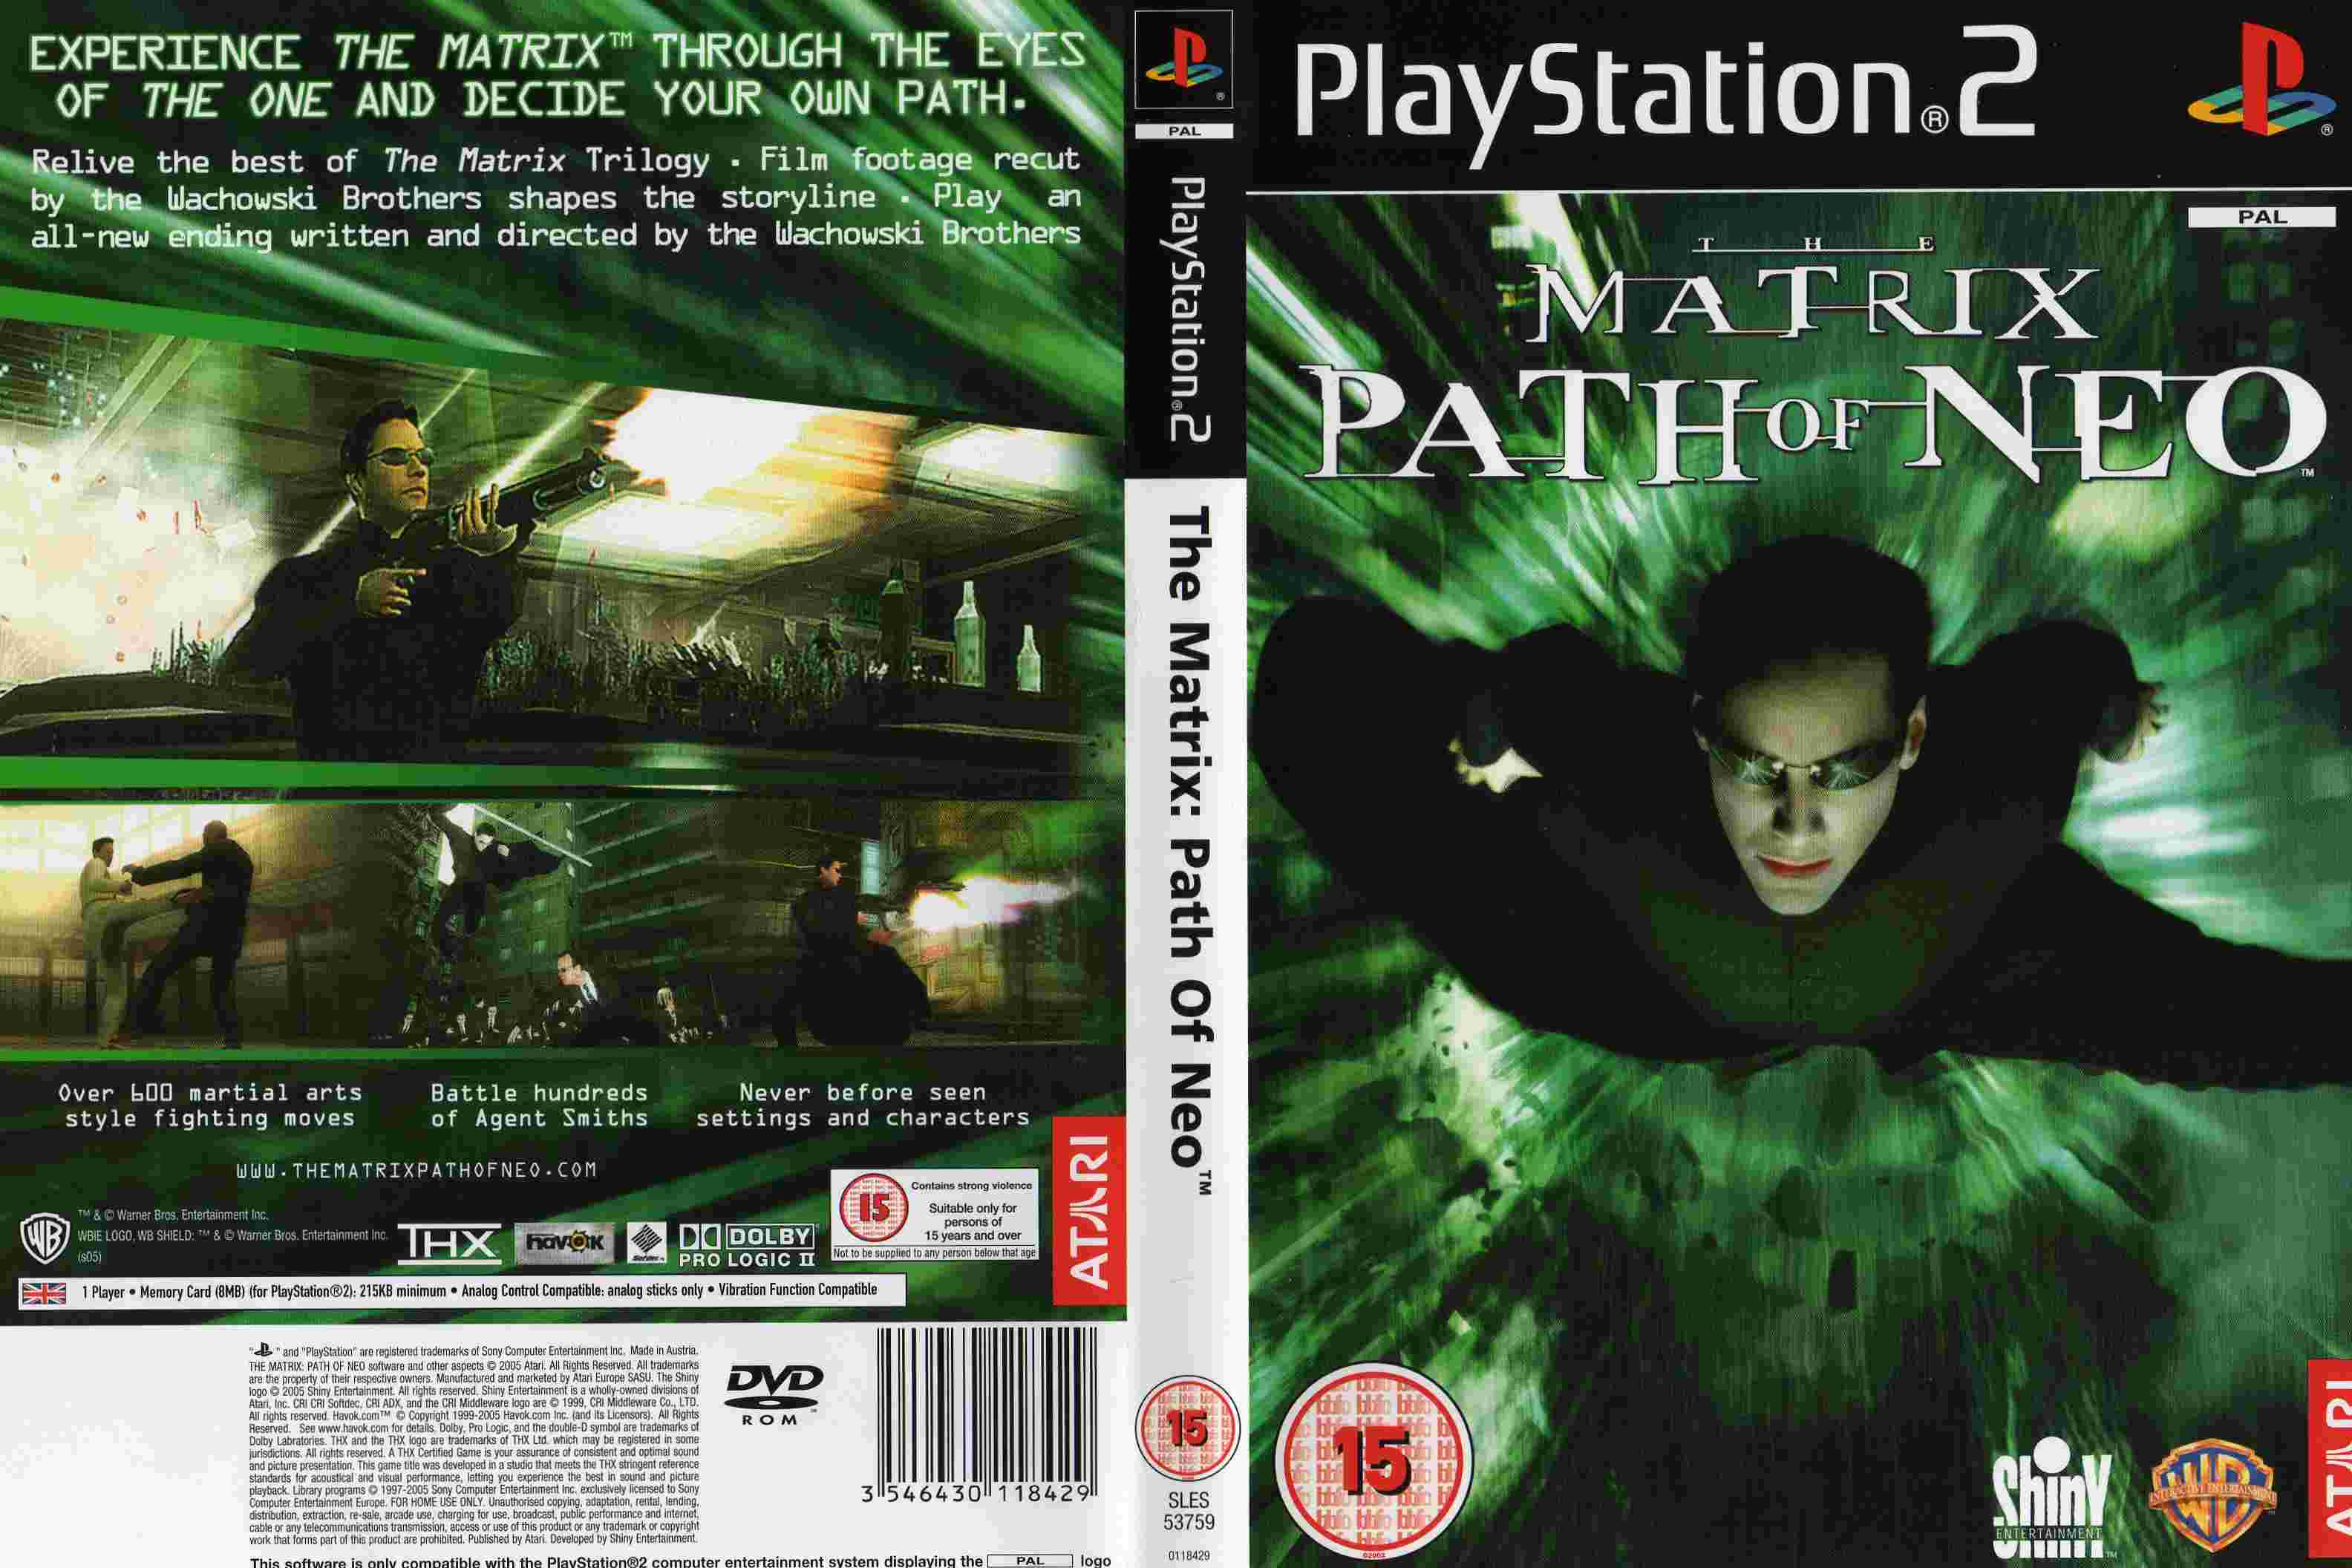 The Matrix: Patho of Neo